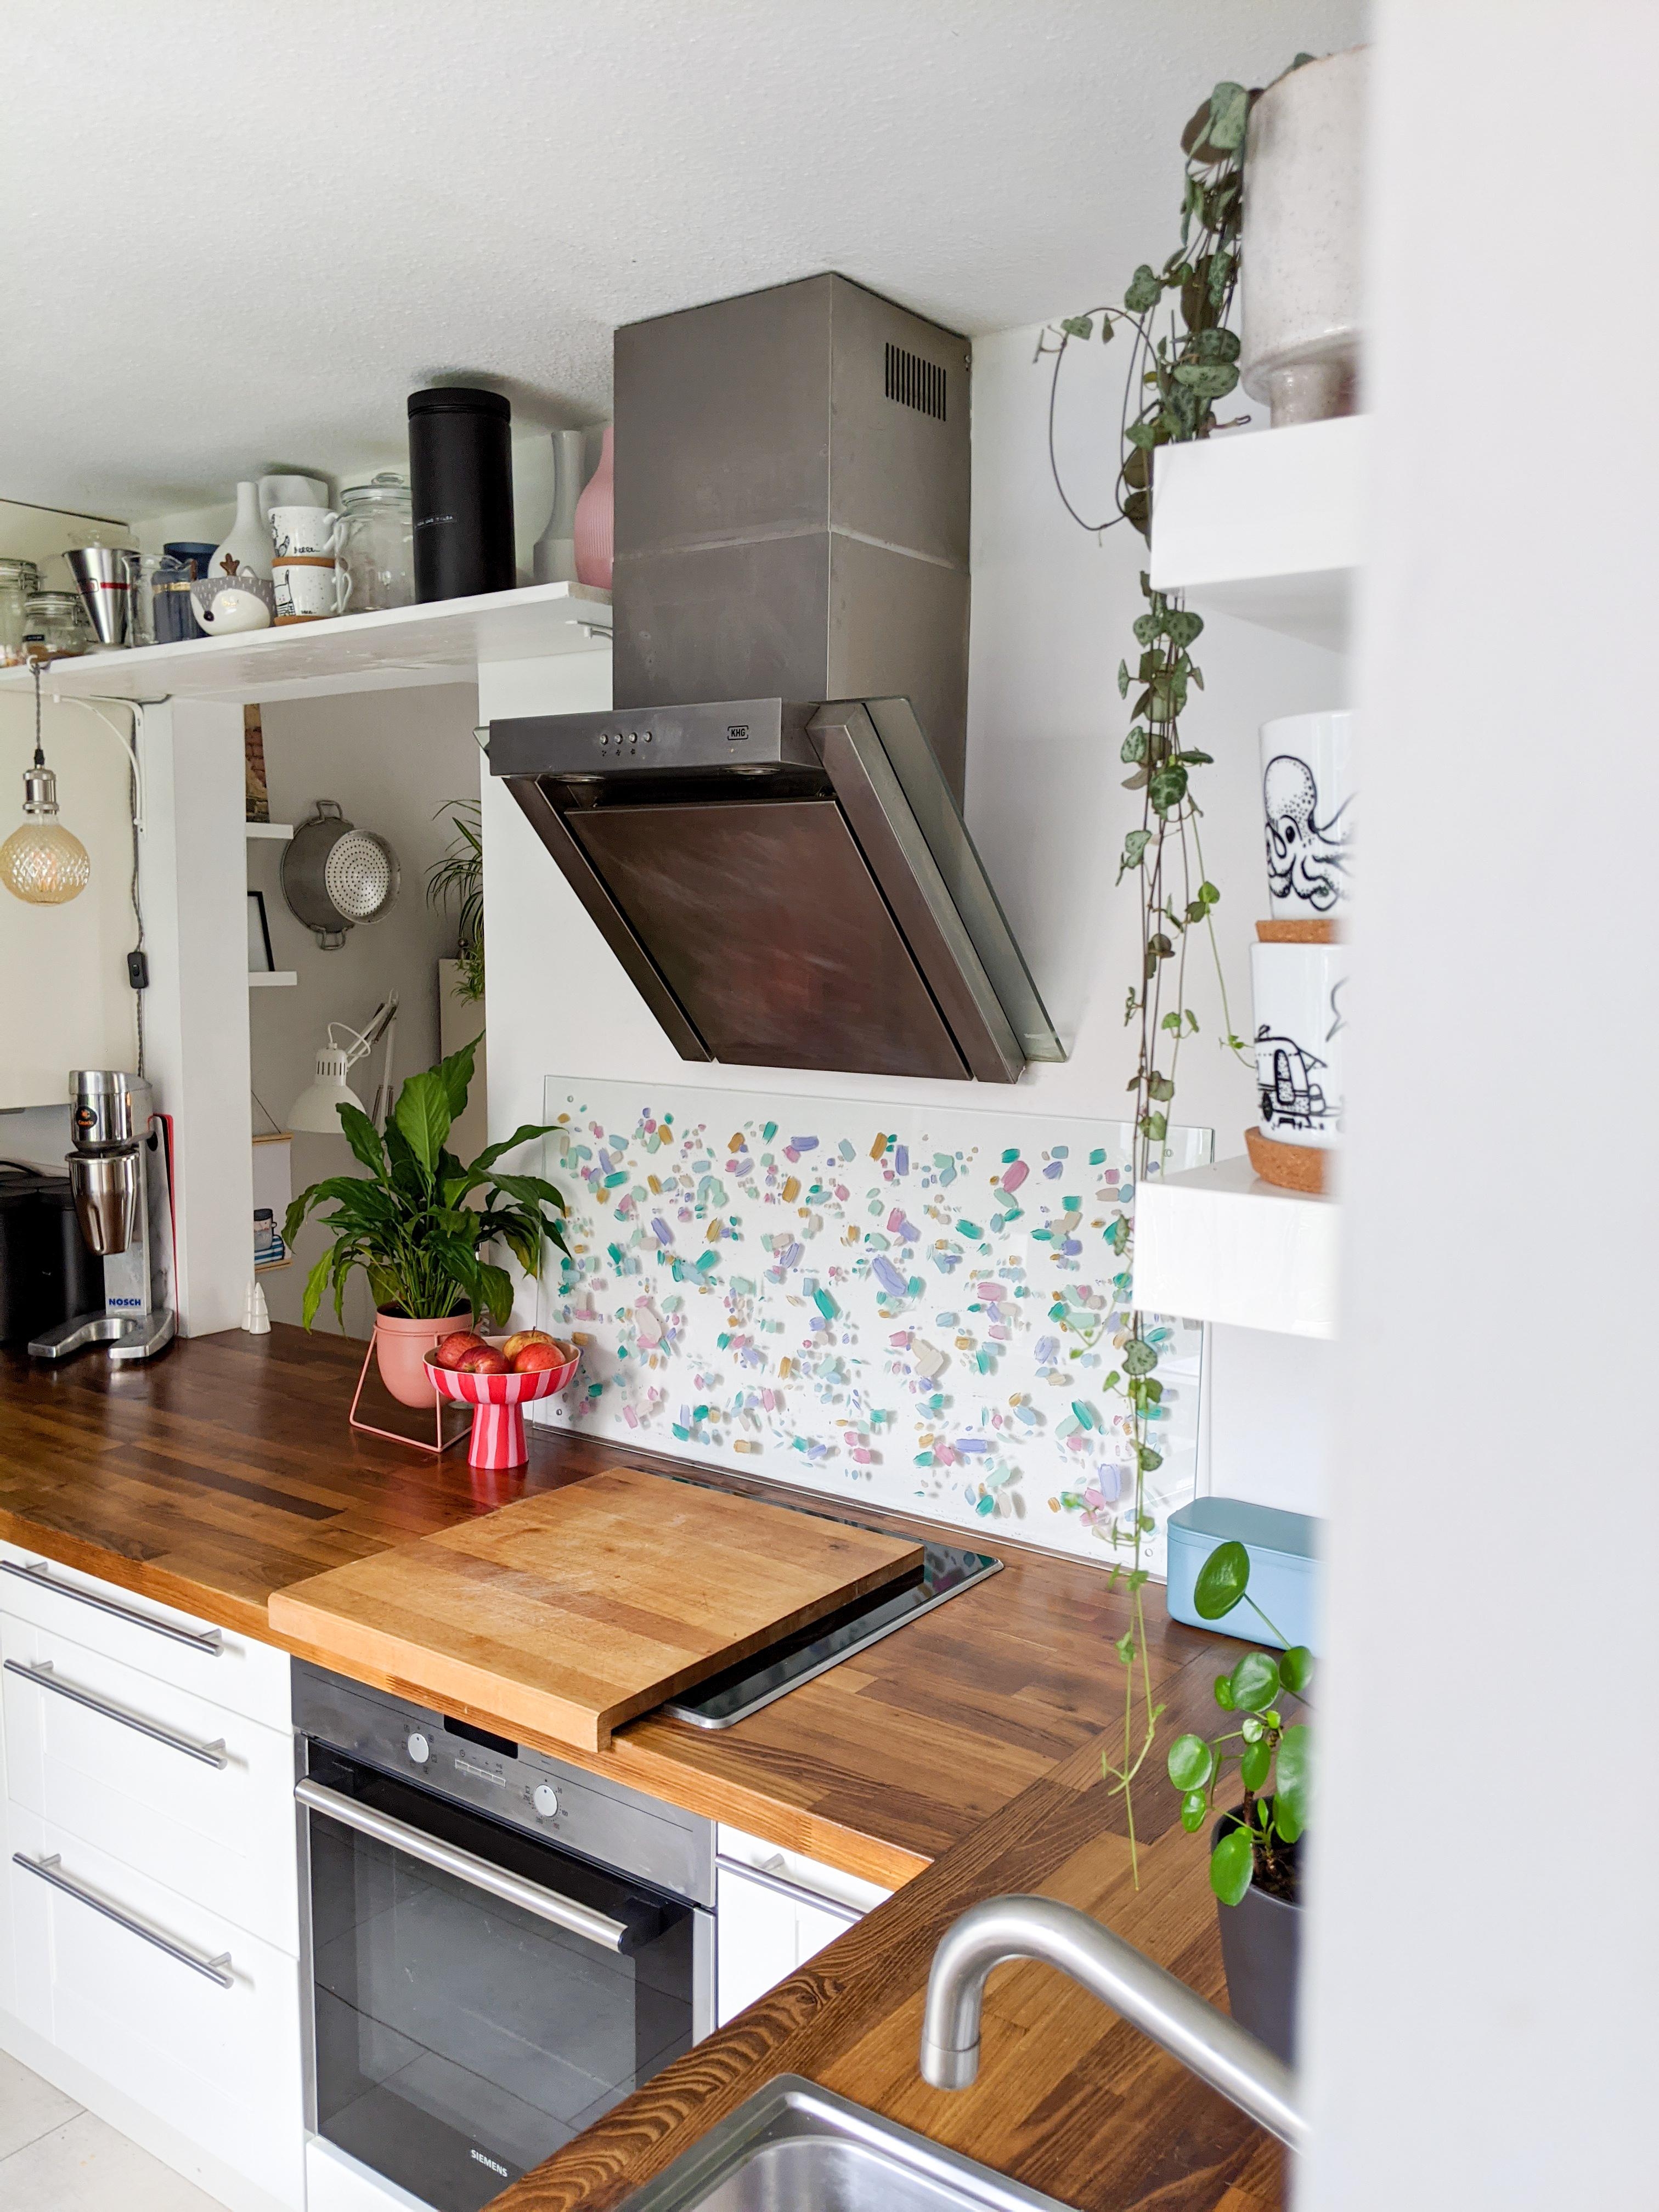 Unsere #küche mit neuer #diy #terrazzo Glasplatte #renovieren #kitchen #kitcheninspo #gemalt #weiss #holz #deko #pastell